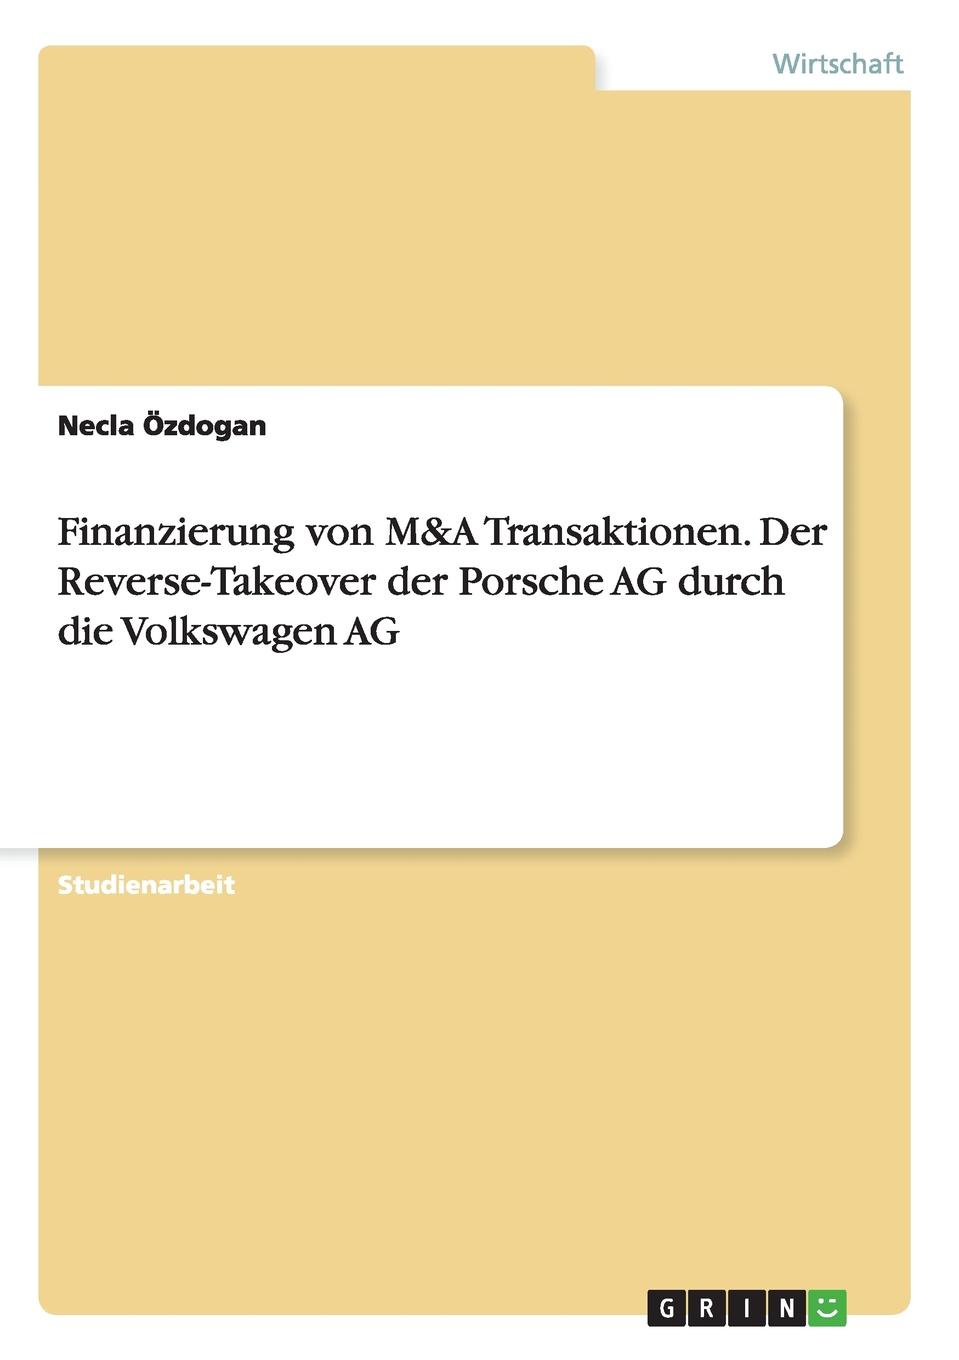 Finanzierung von M.A Transaktionen. Der Reverse-Takeover der Porsche AG durch die Volkswagen AG